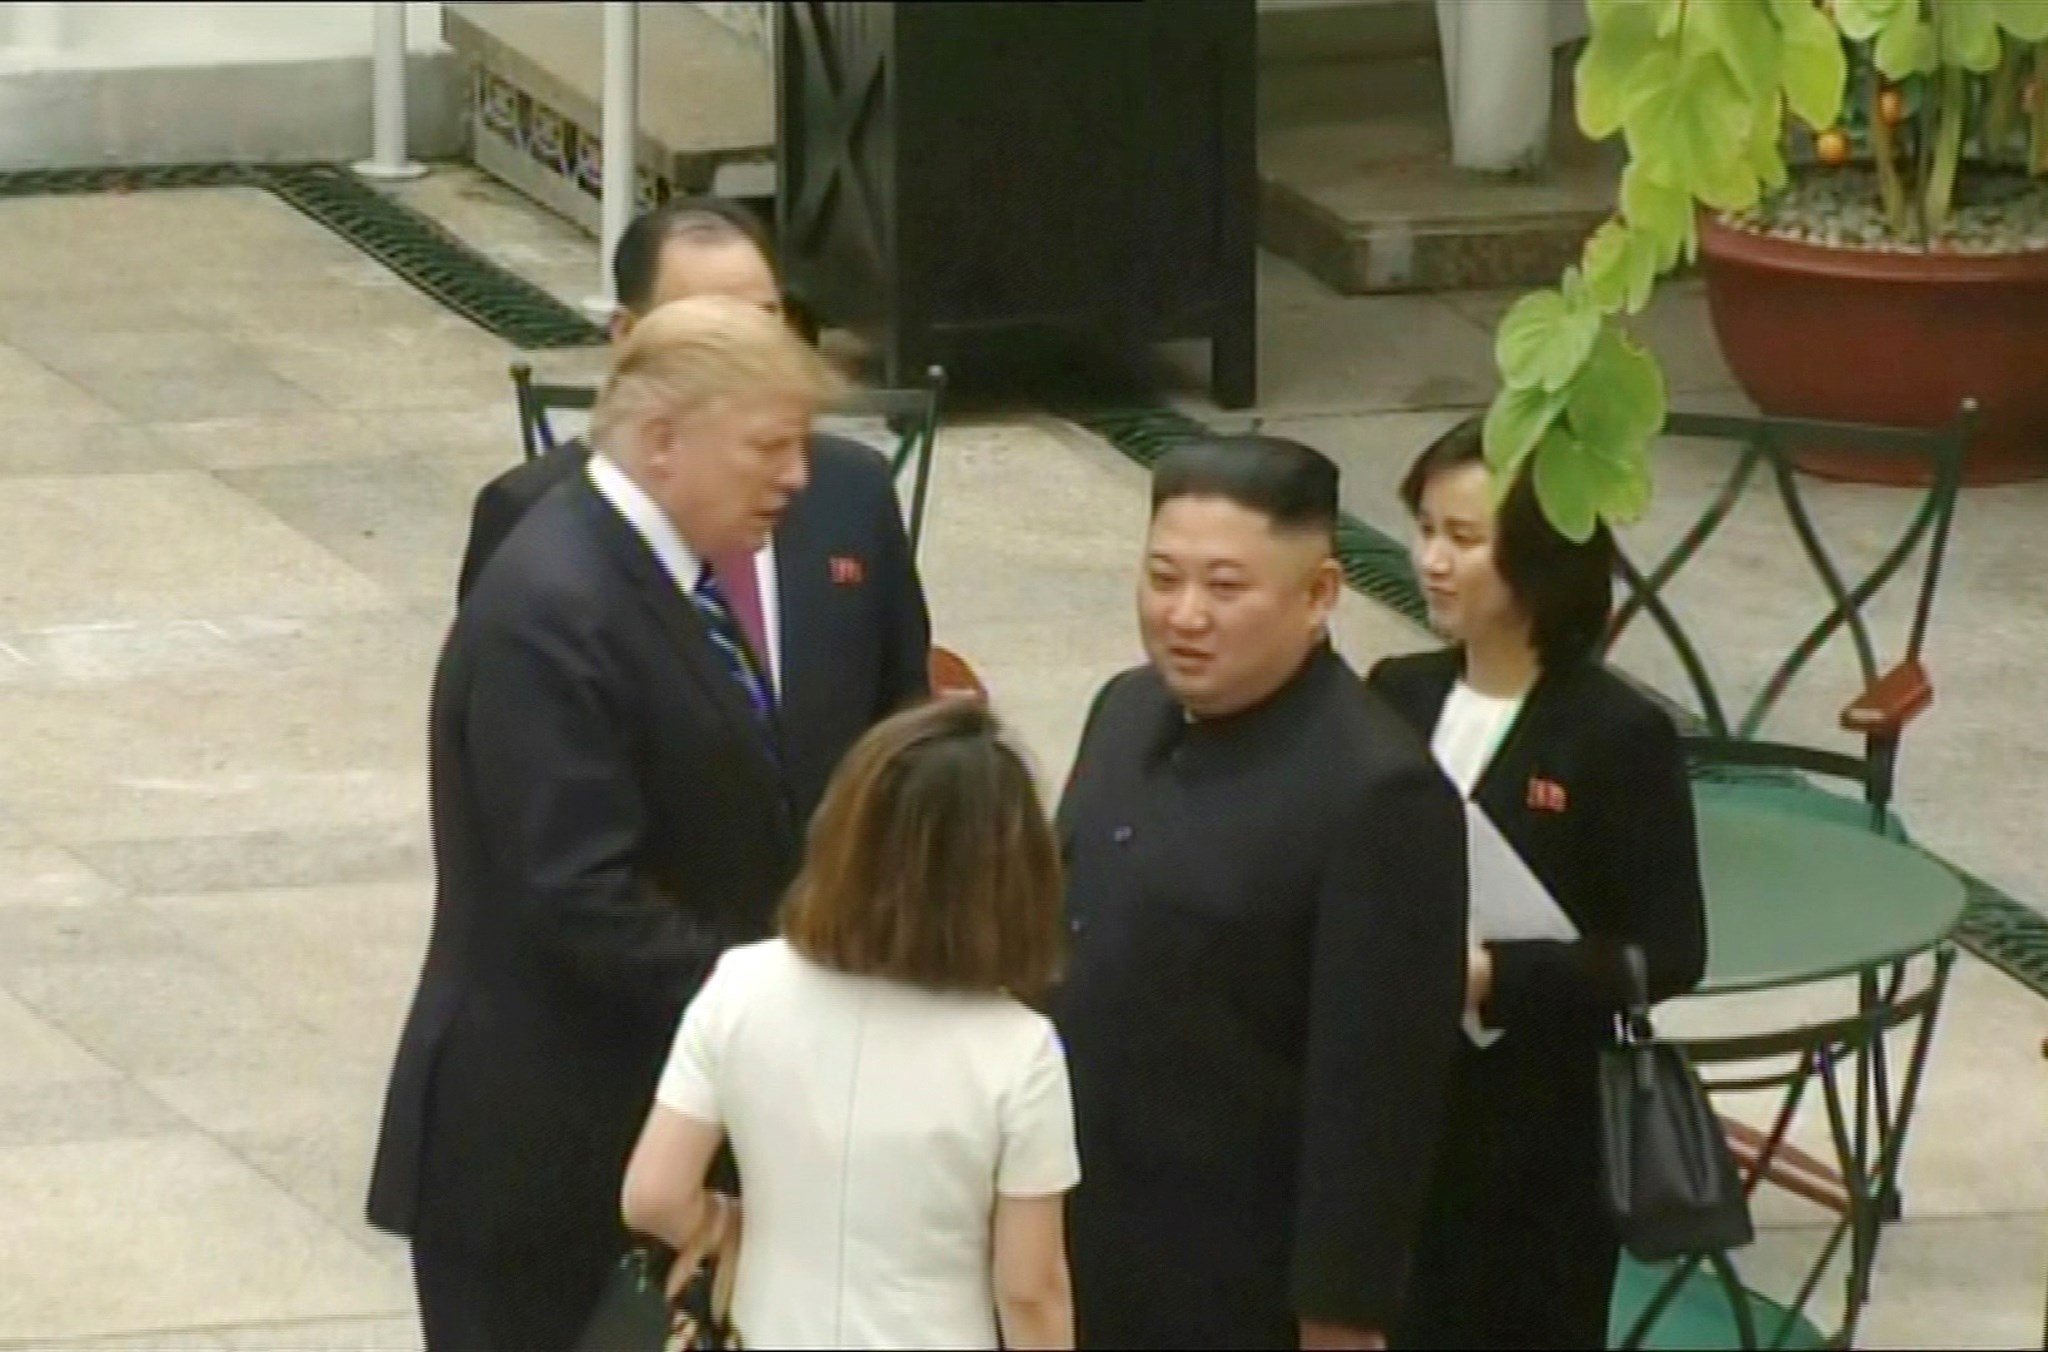 Termina abruptamente y sin acuerdo la cumbre entre Trump y Kim